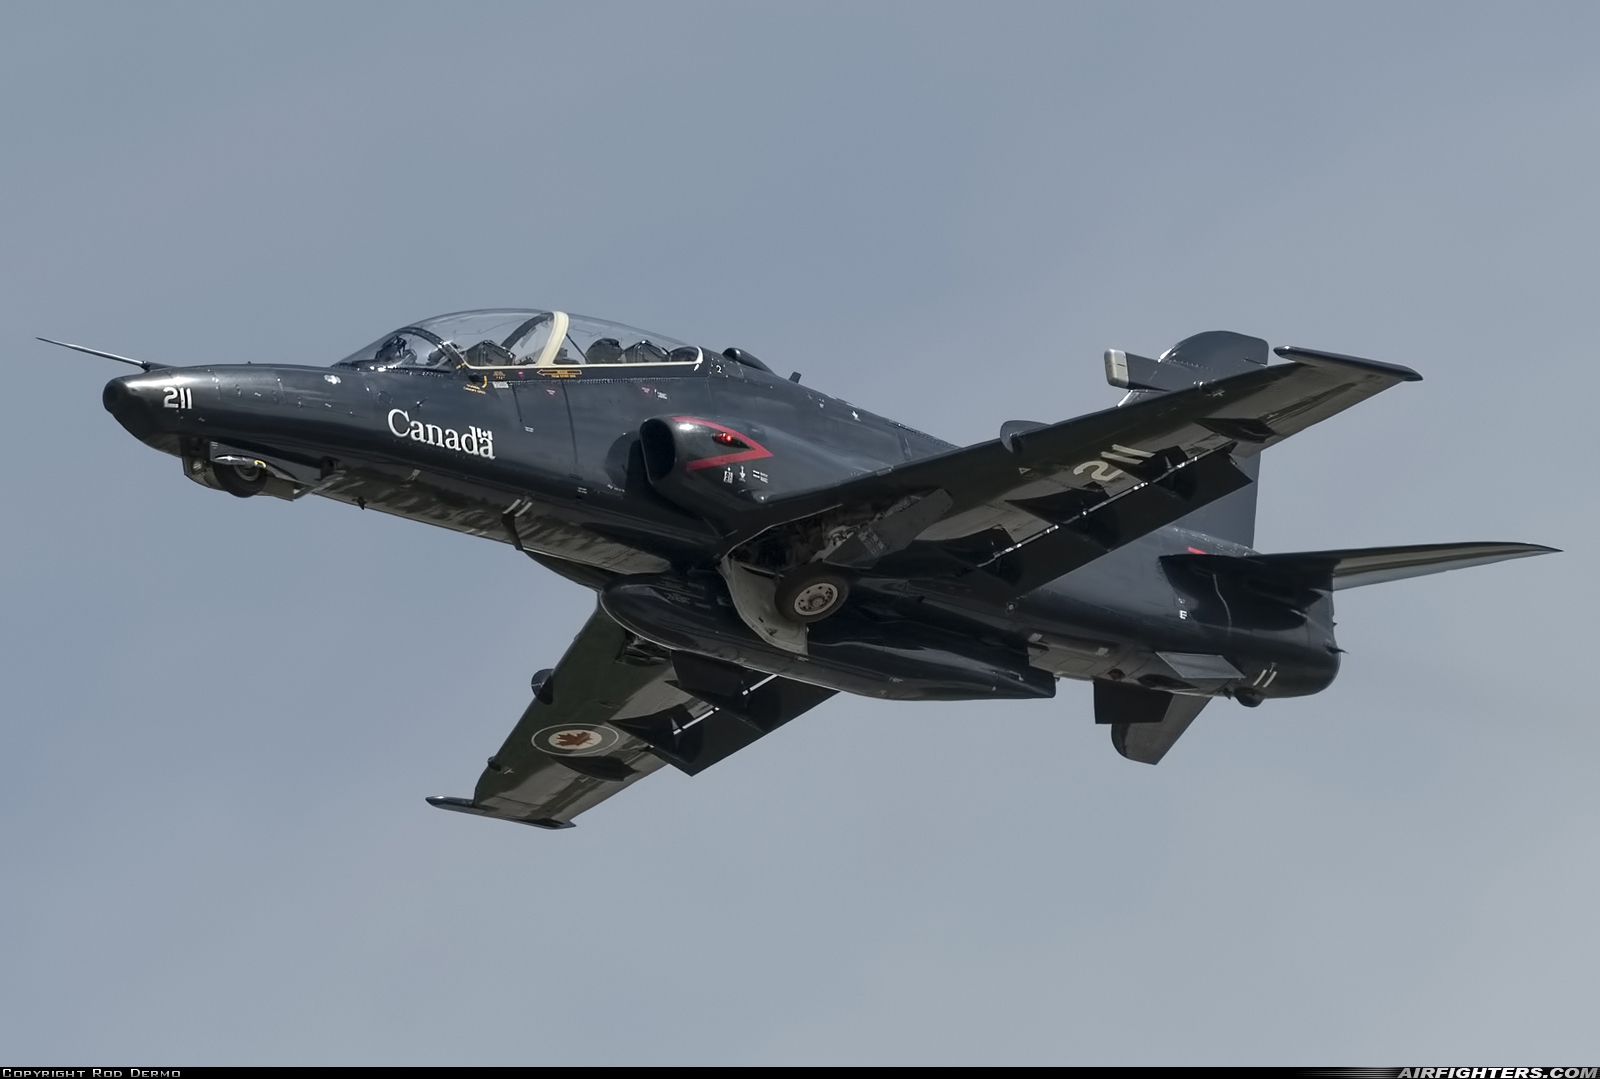 Canada - Air Force BAE Systems CT-155 Hawk (Hawk Mk.115) 155211 at London (YXU / CYXU), Canada